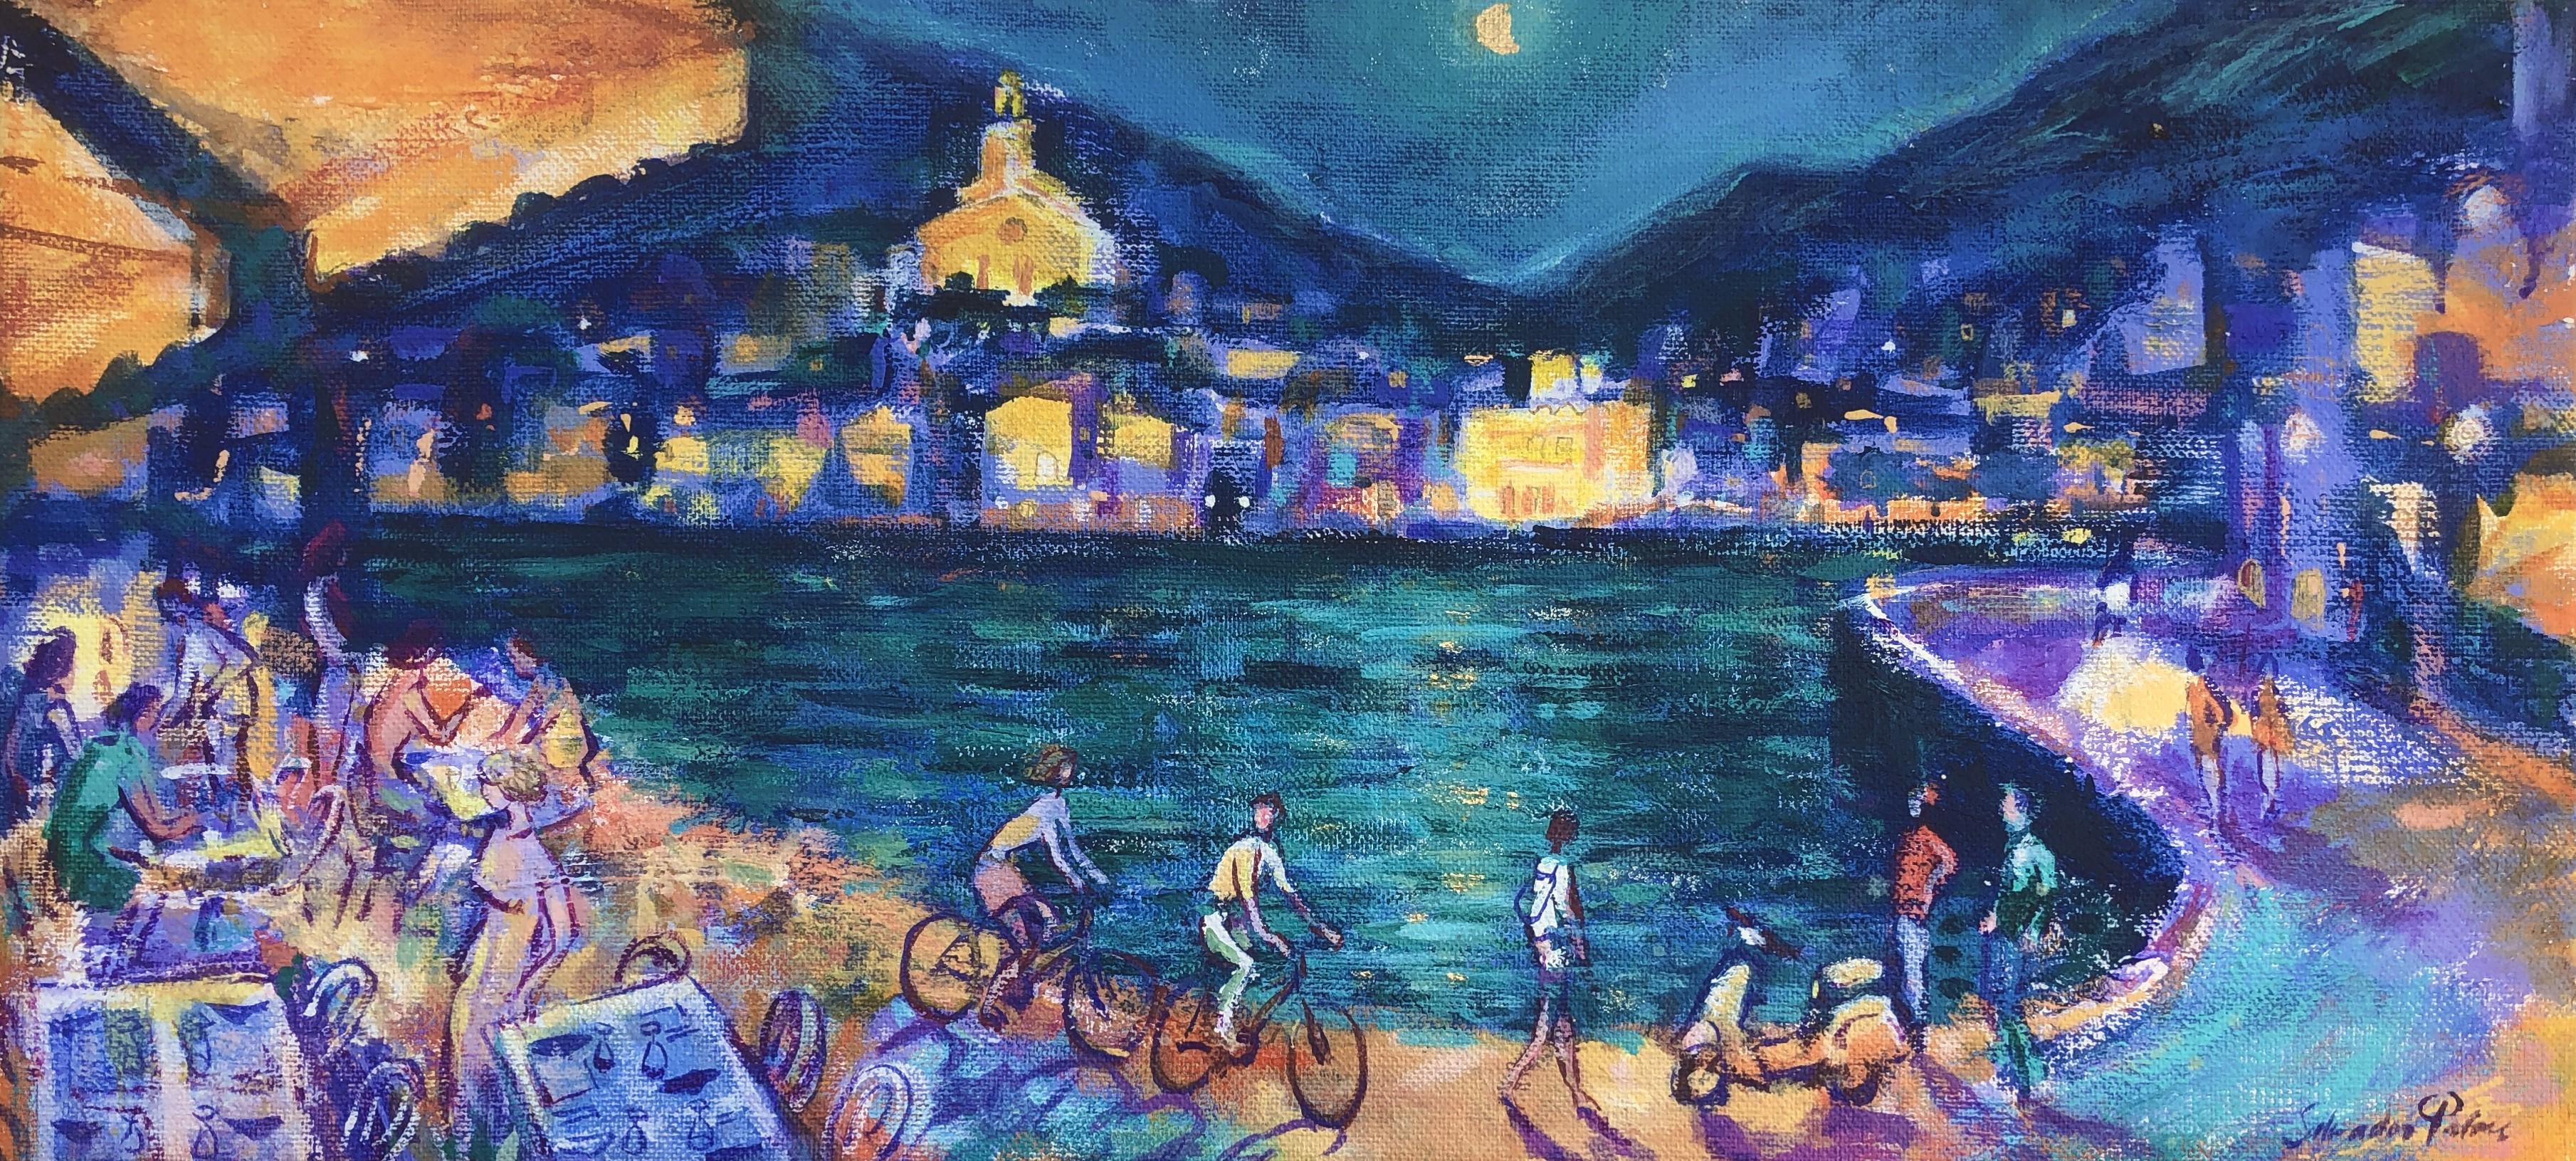 Salvador Palou Landscape Painting - Cadaqués nocturnal Oil on burlap painting Spain seascape spanish